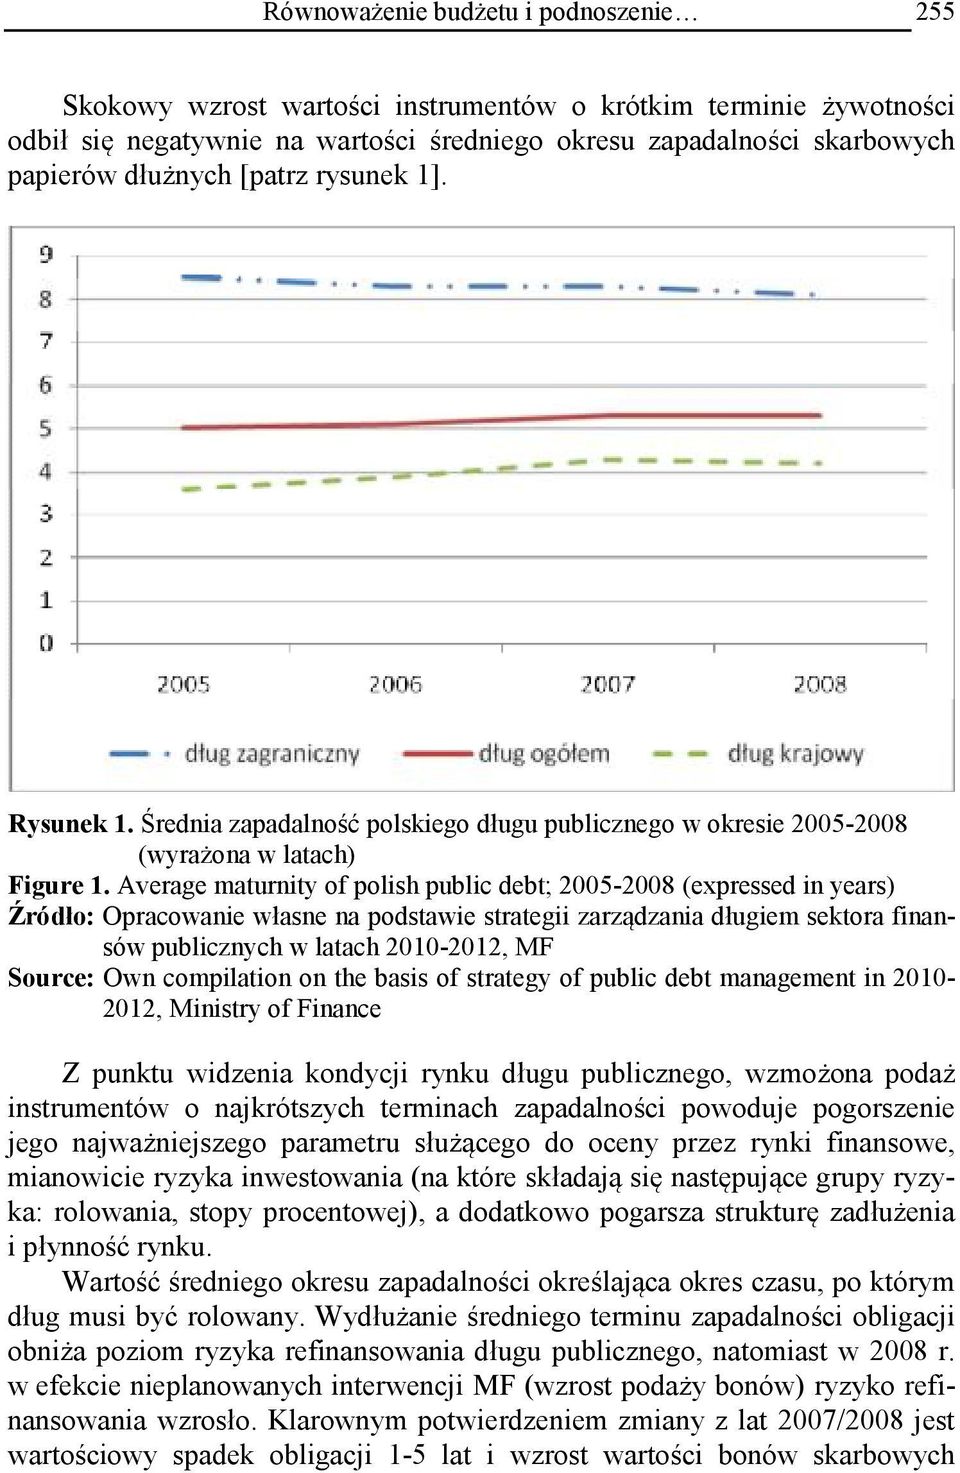 Average maturnity of polish public debt; 2005-2008 (expressed in years) Źródło: Opracowanie własne na podstawie strategii zarządzania długiem sektora finansów publicznych w latach 2010-2012, MF